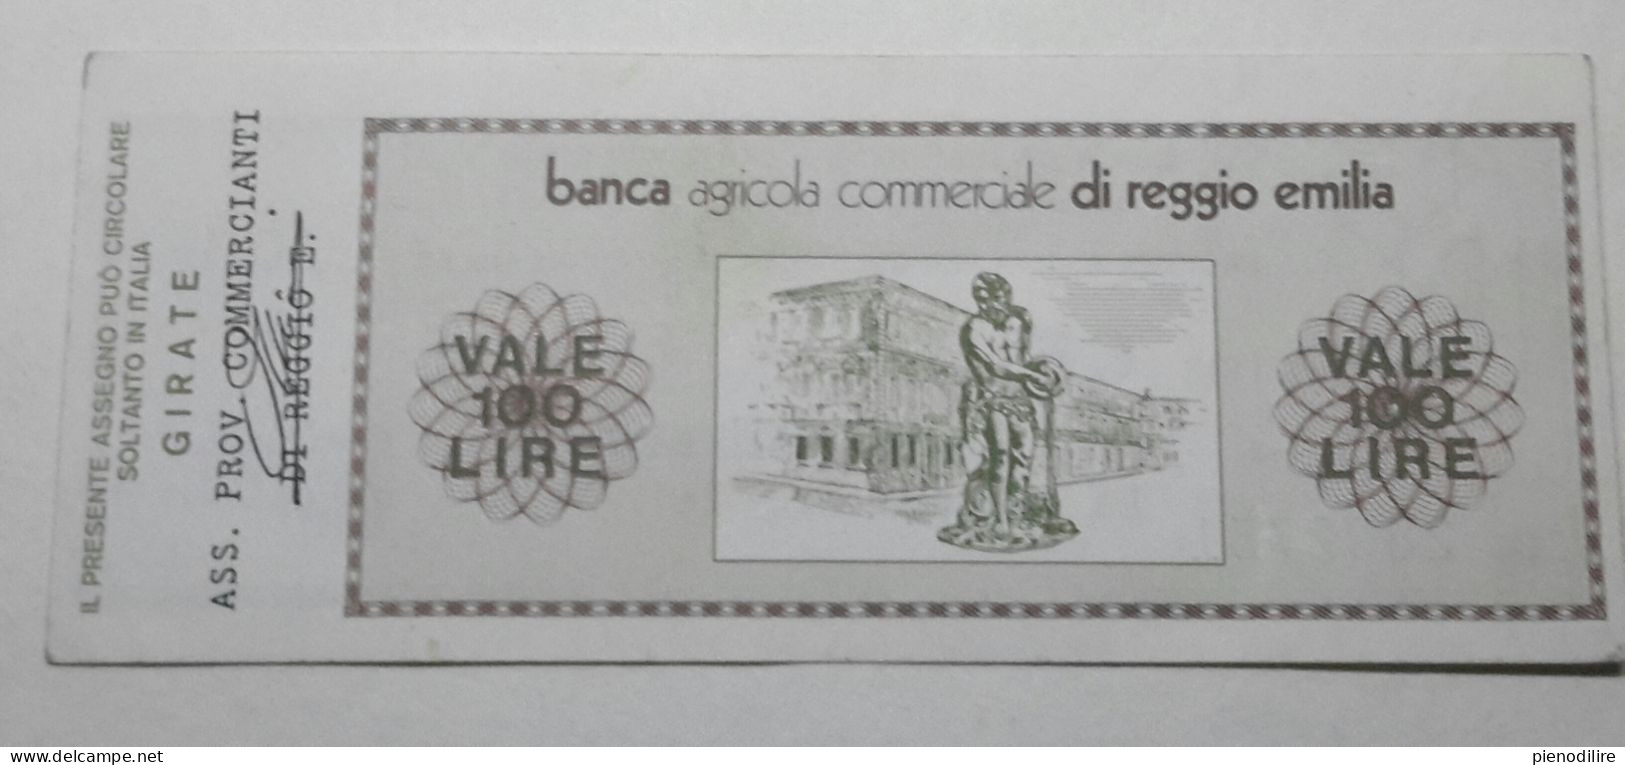 100 LIRE 3.10.1977 BANCA AGRICOLA COMMERCIALE REGGIO EMILIA (A.45) - [10] Checks And Mini-checks